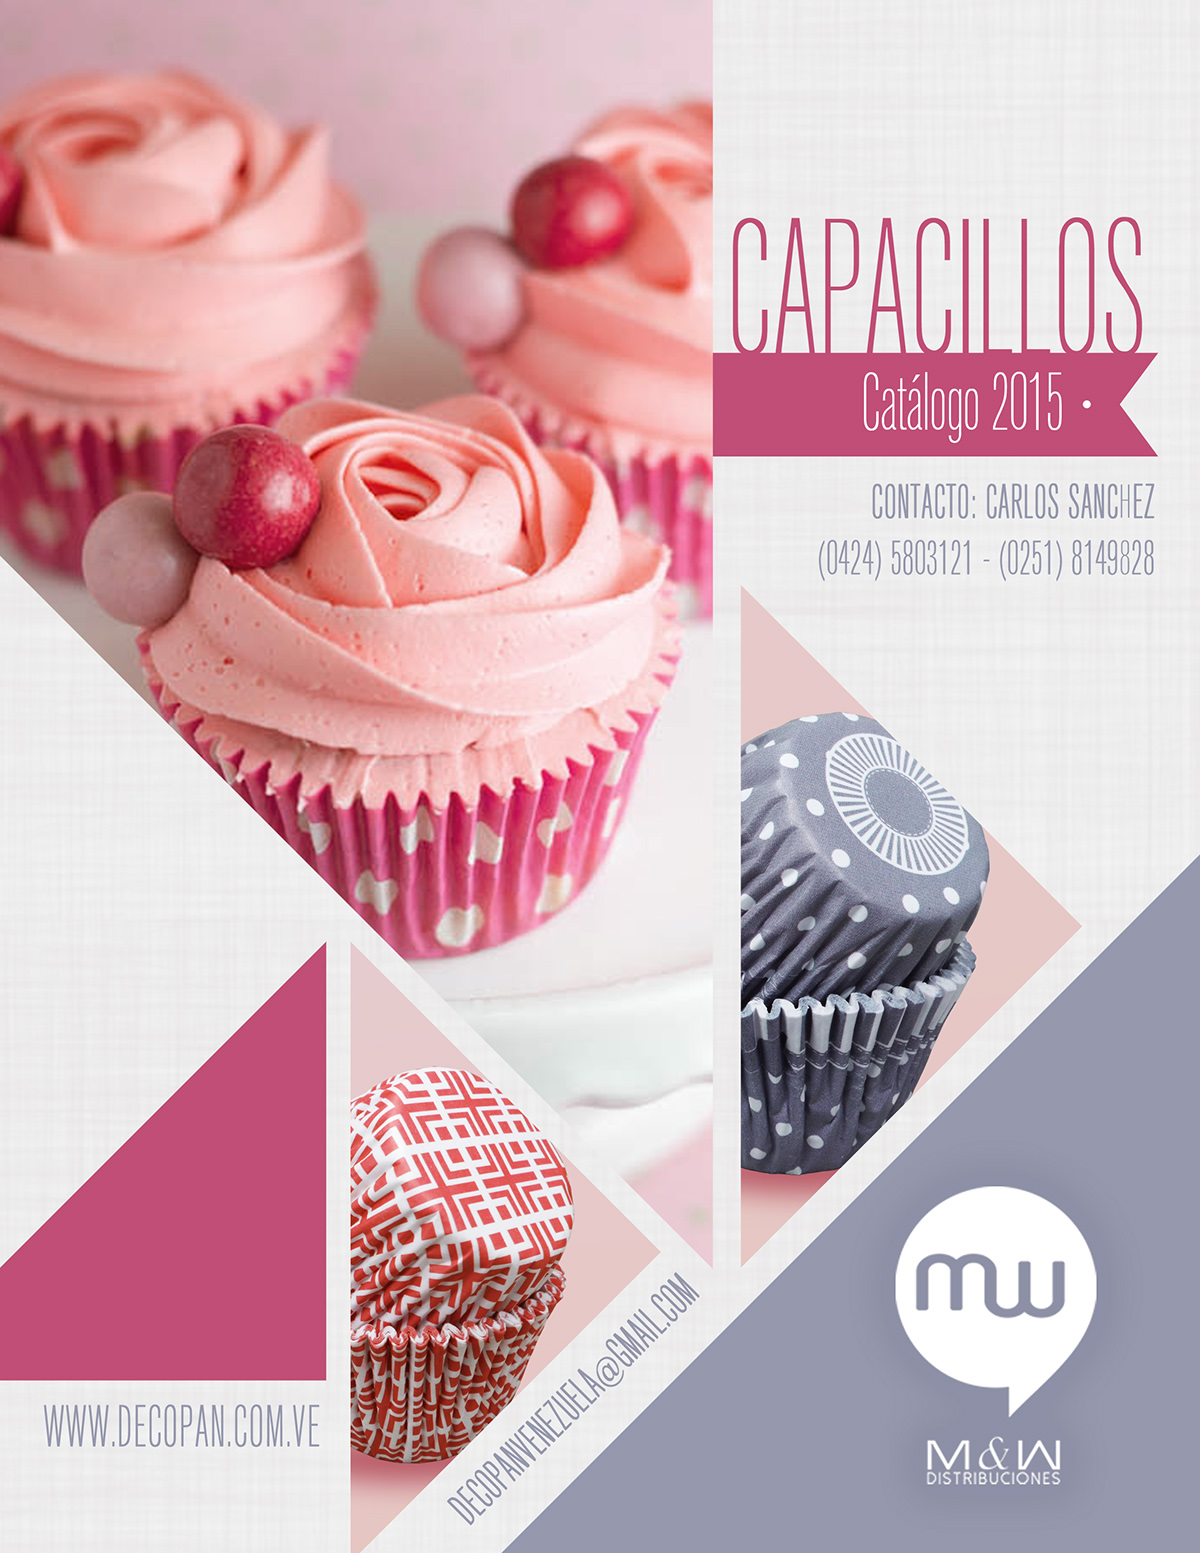 cover poster company decopan Portada catalog catalogo pastry digital cupcake cake